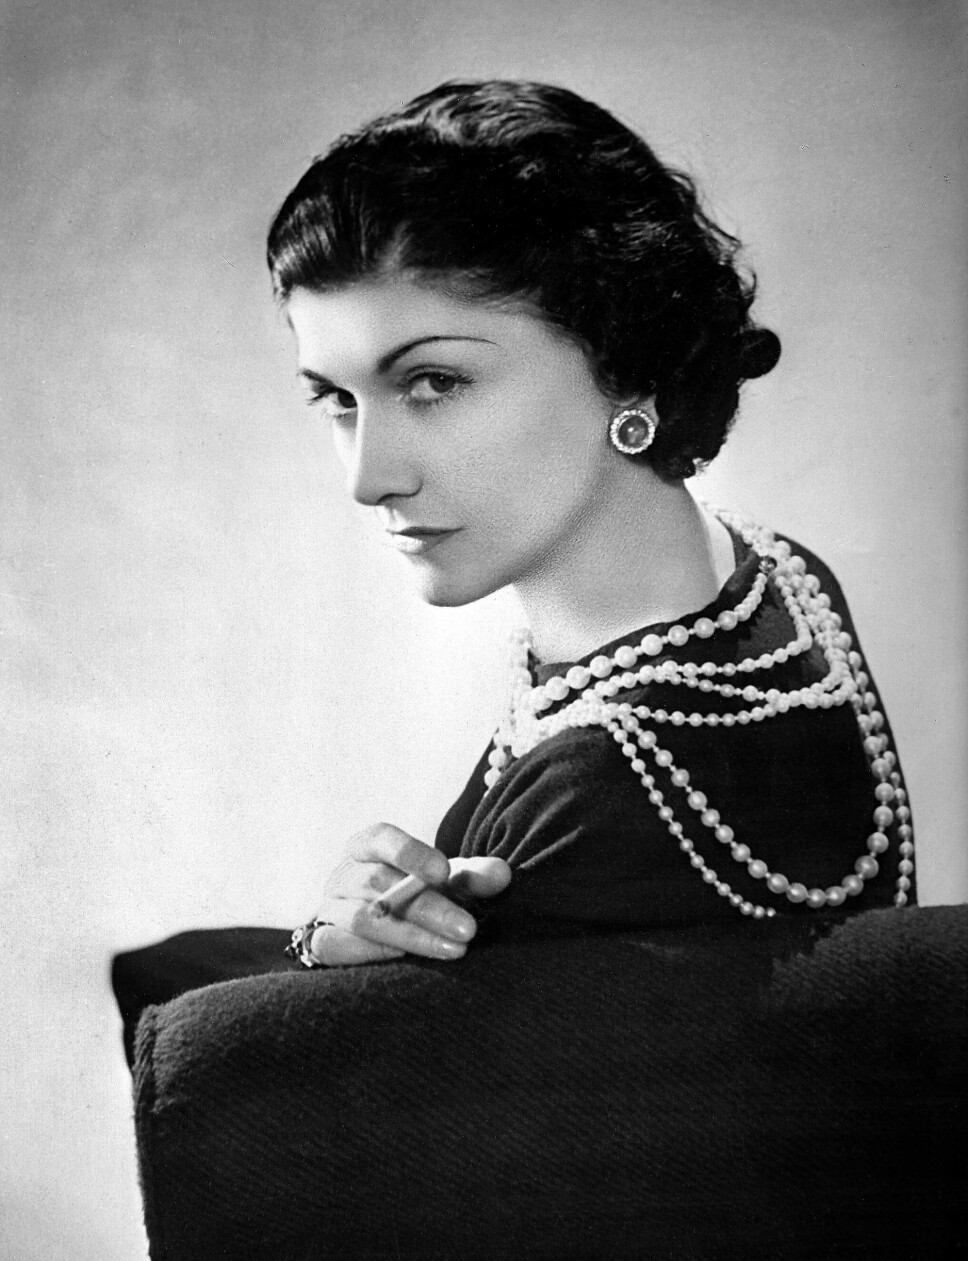 REVOLUSJONERENDE: Coco Chanel revolusjonerte måten
kvinner kledde seg på da hun i
1926 introduserte «den lille sorte.»